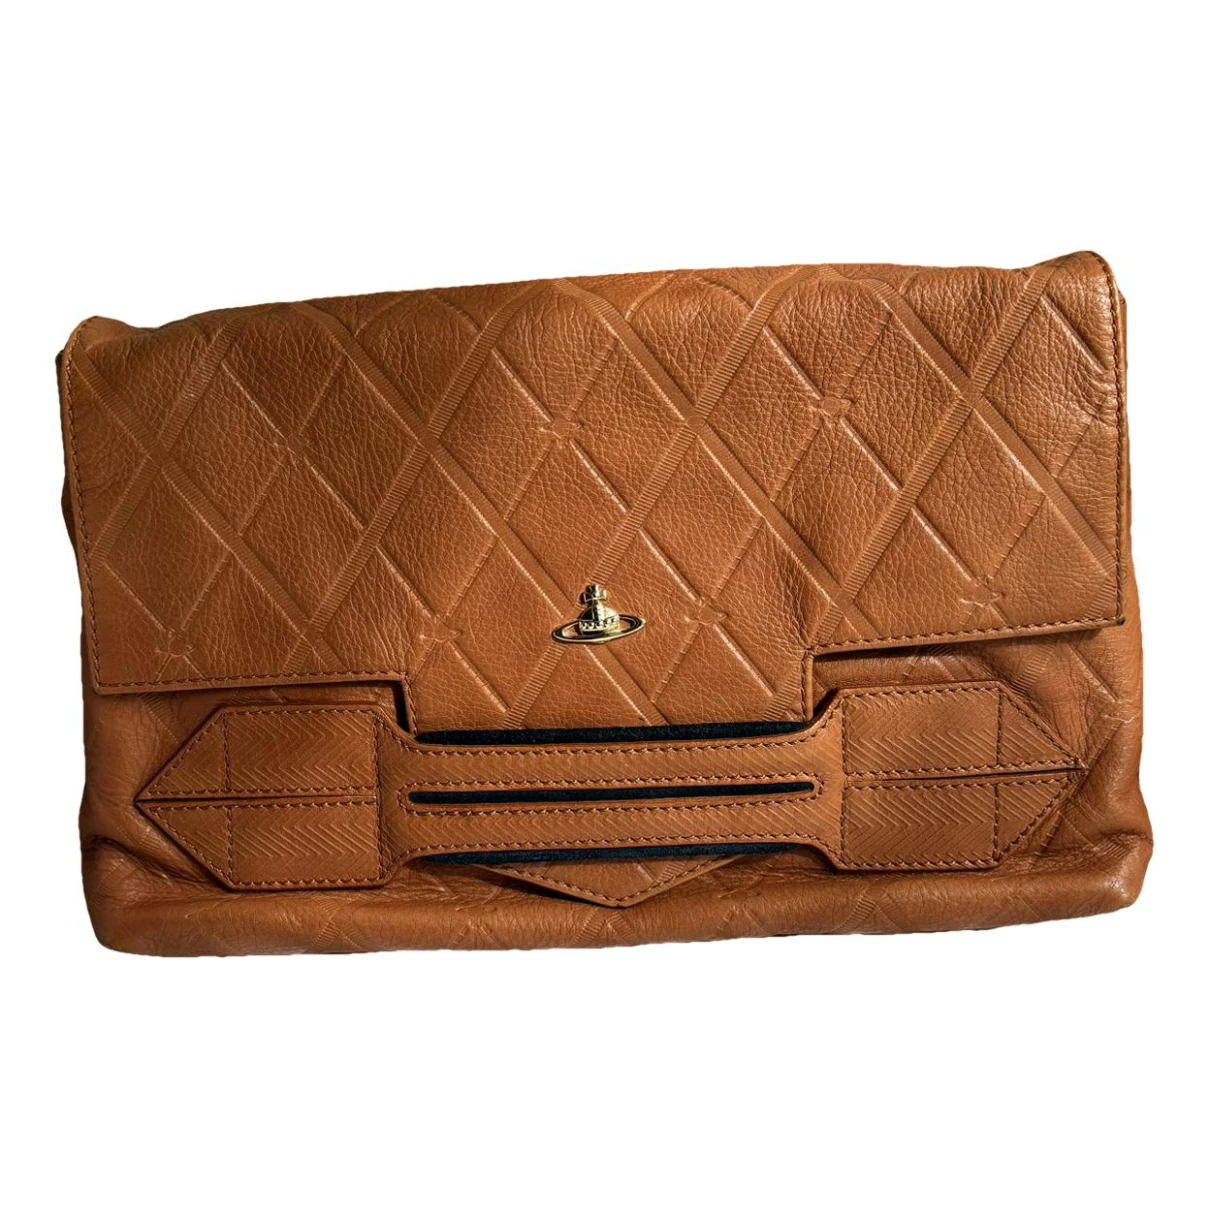 Pre-owned Vivienne Westwood Leather Handbag In Brown